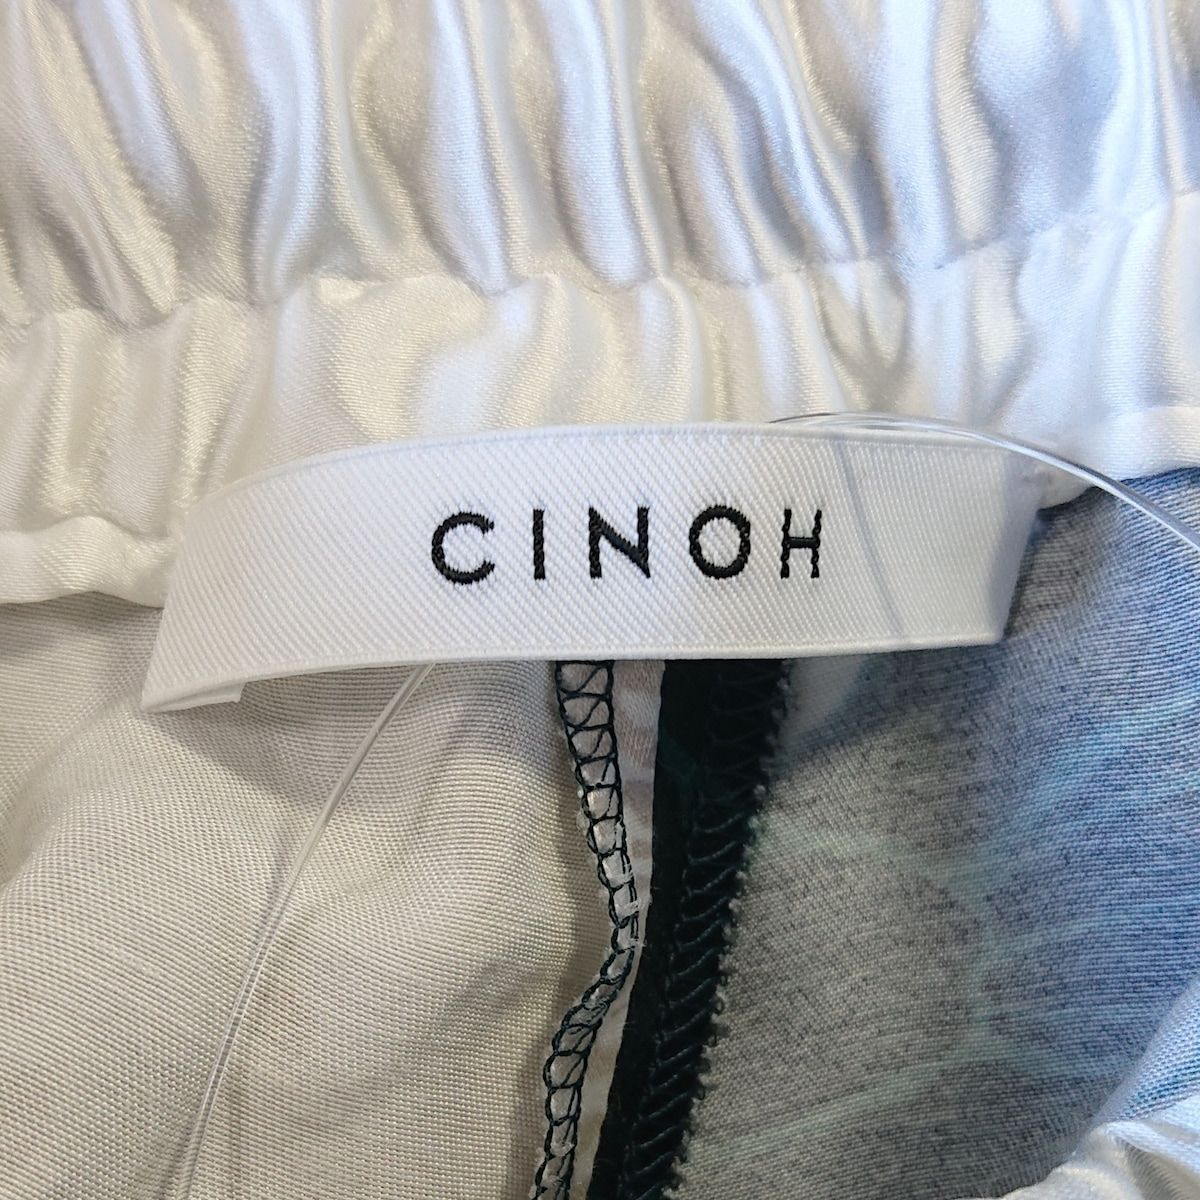 CINOH(チノ) パンツ サイズ36 S レディース - 白×ダークグリーン×黒 フルレングス/花柄 - メルカリ